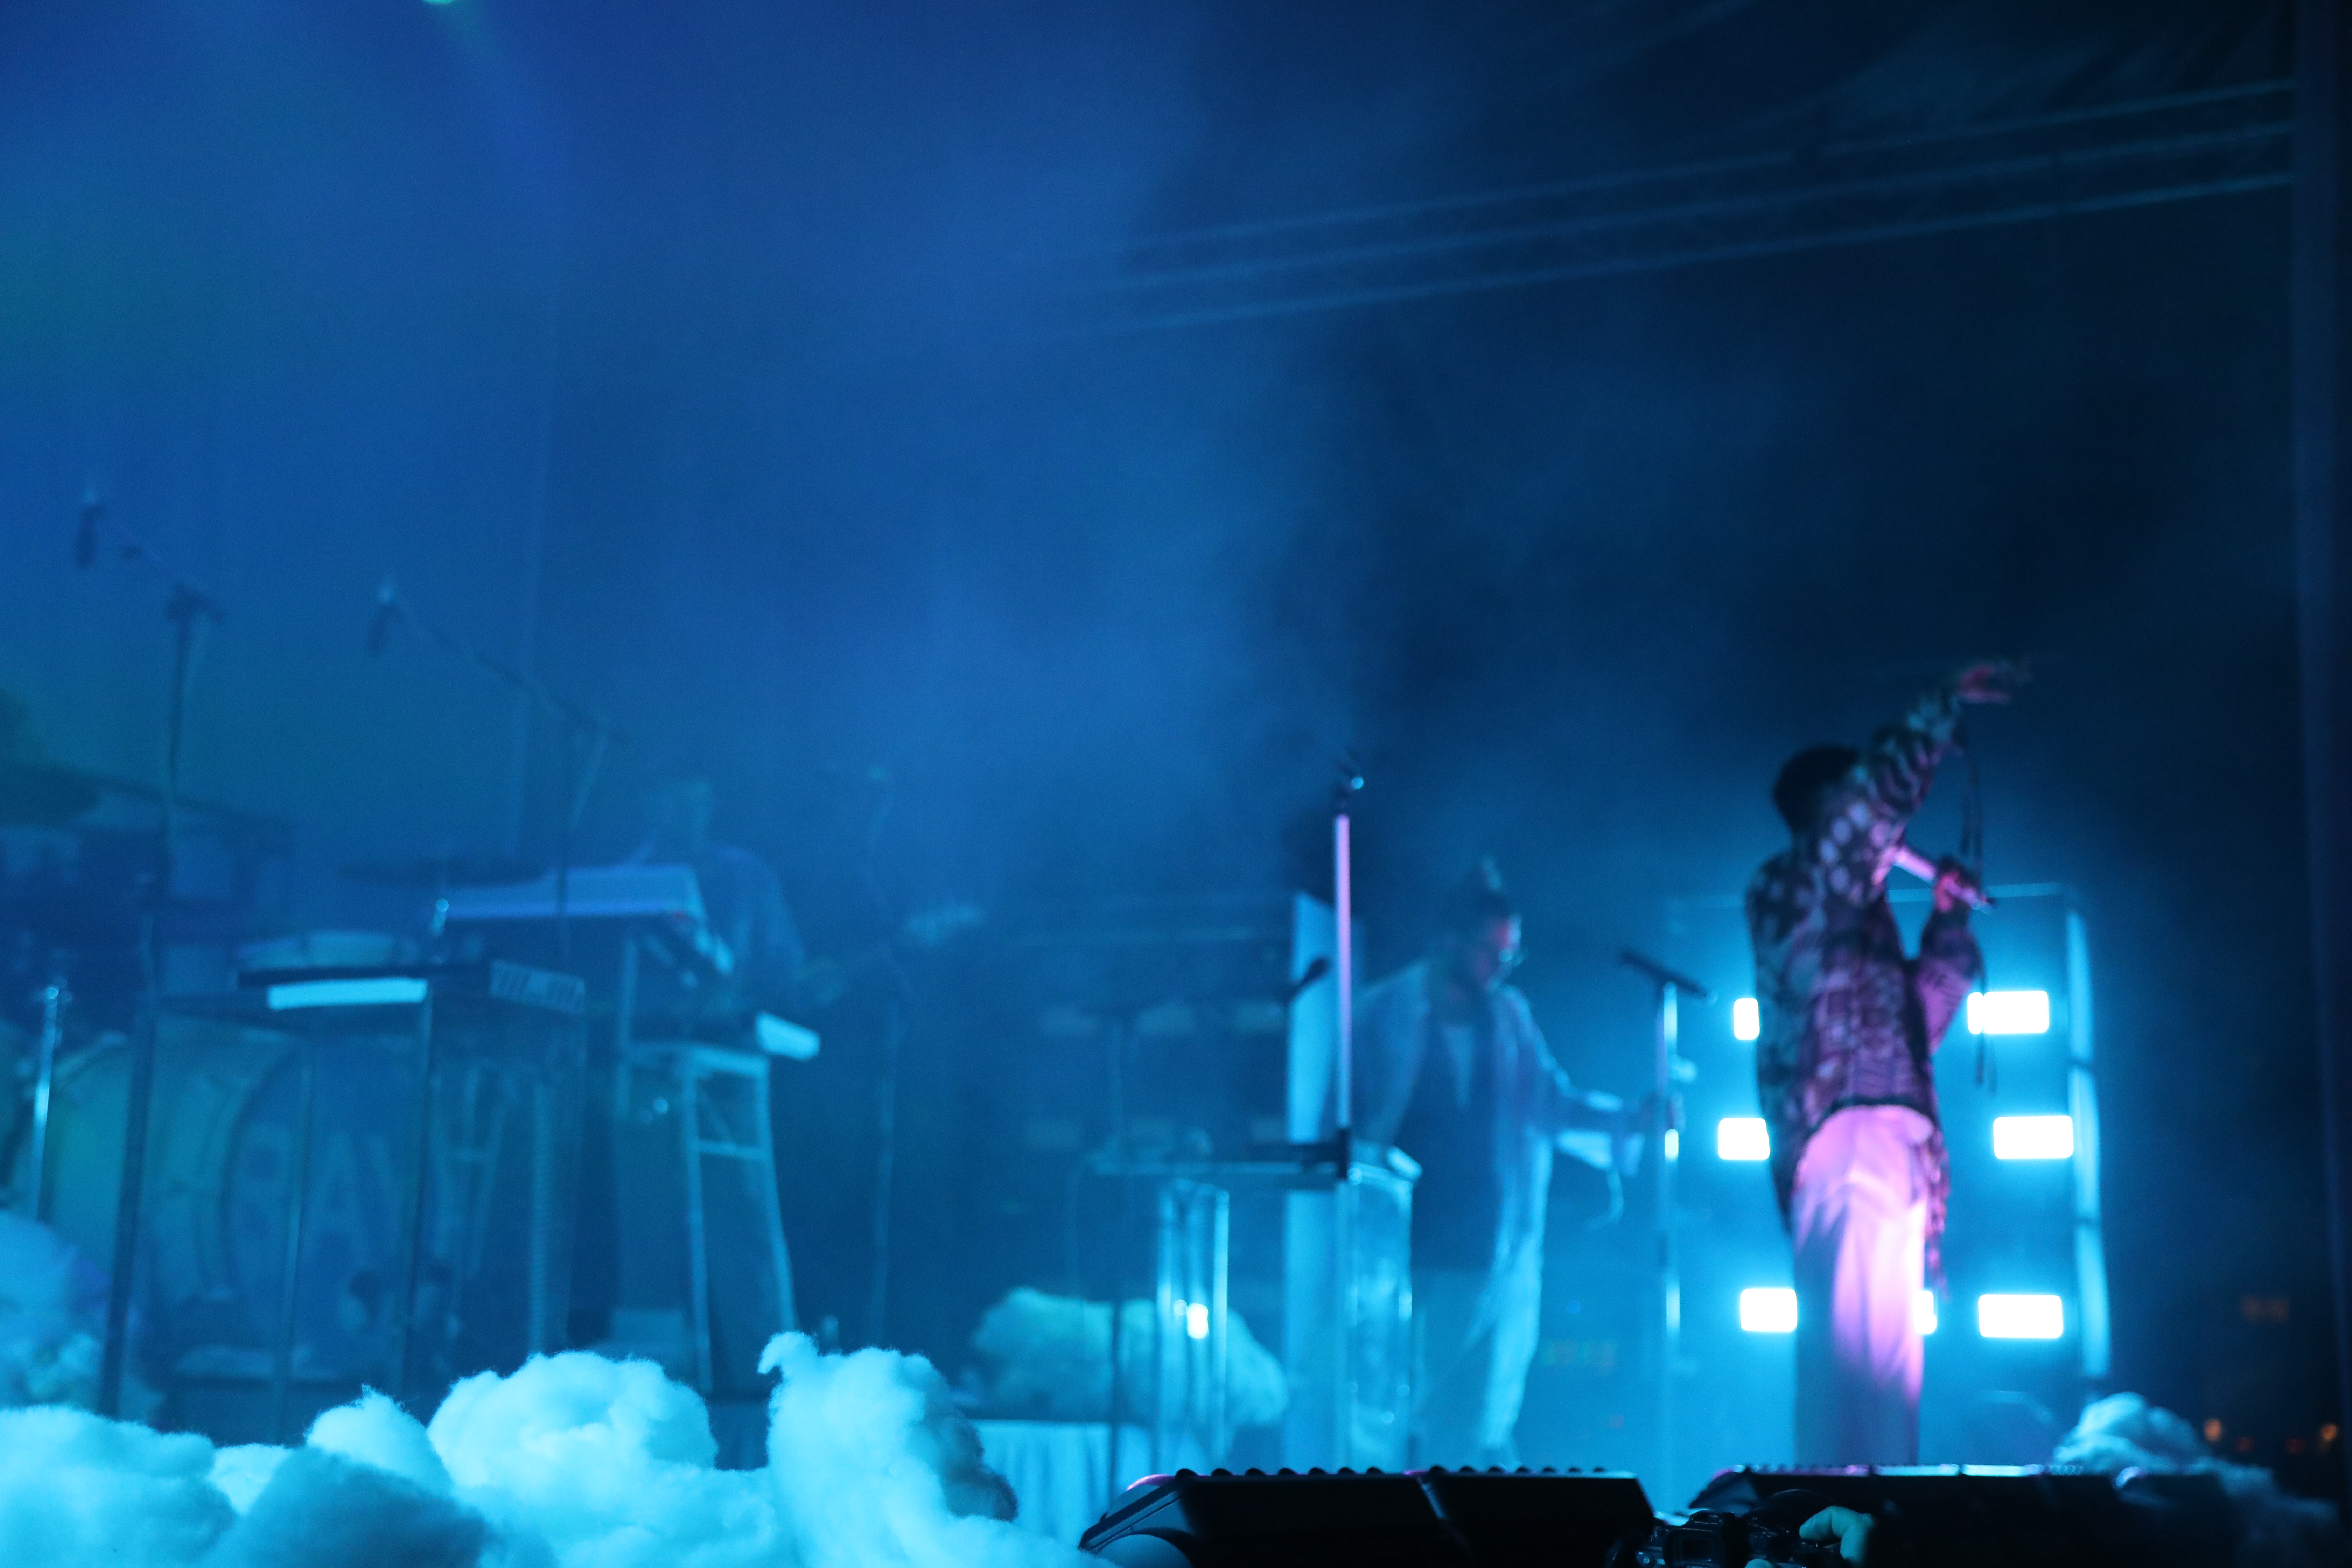 ett band spelar på en scen som är upplyst i blått ljus. bildens skärpa ligger på rök i förgrunden